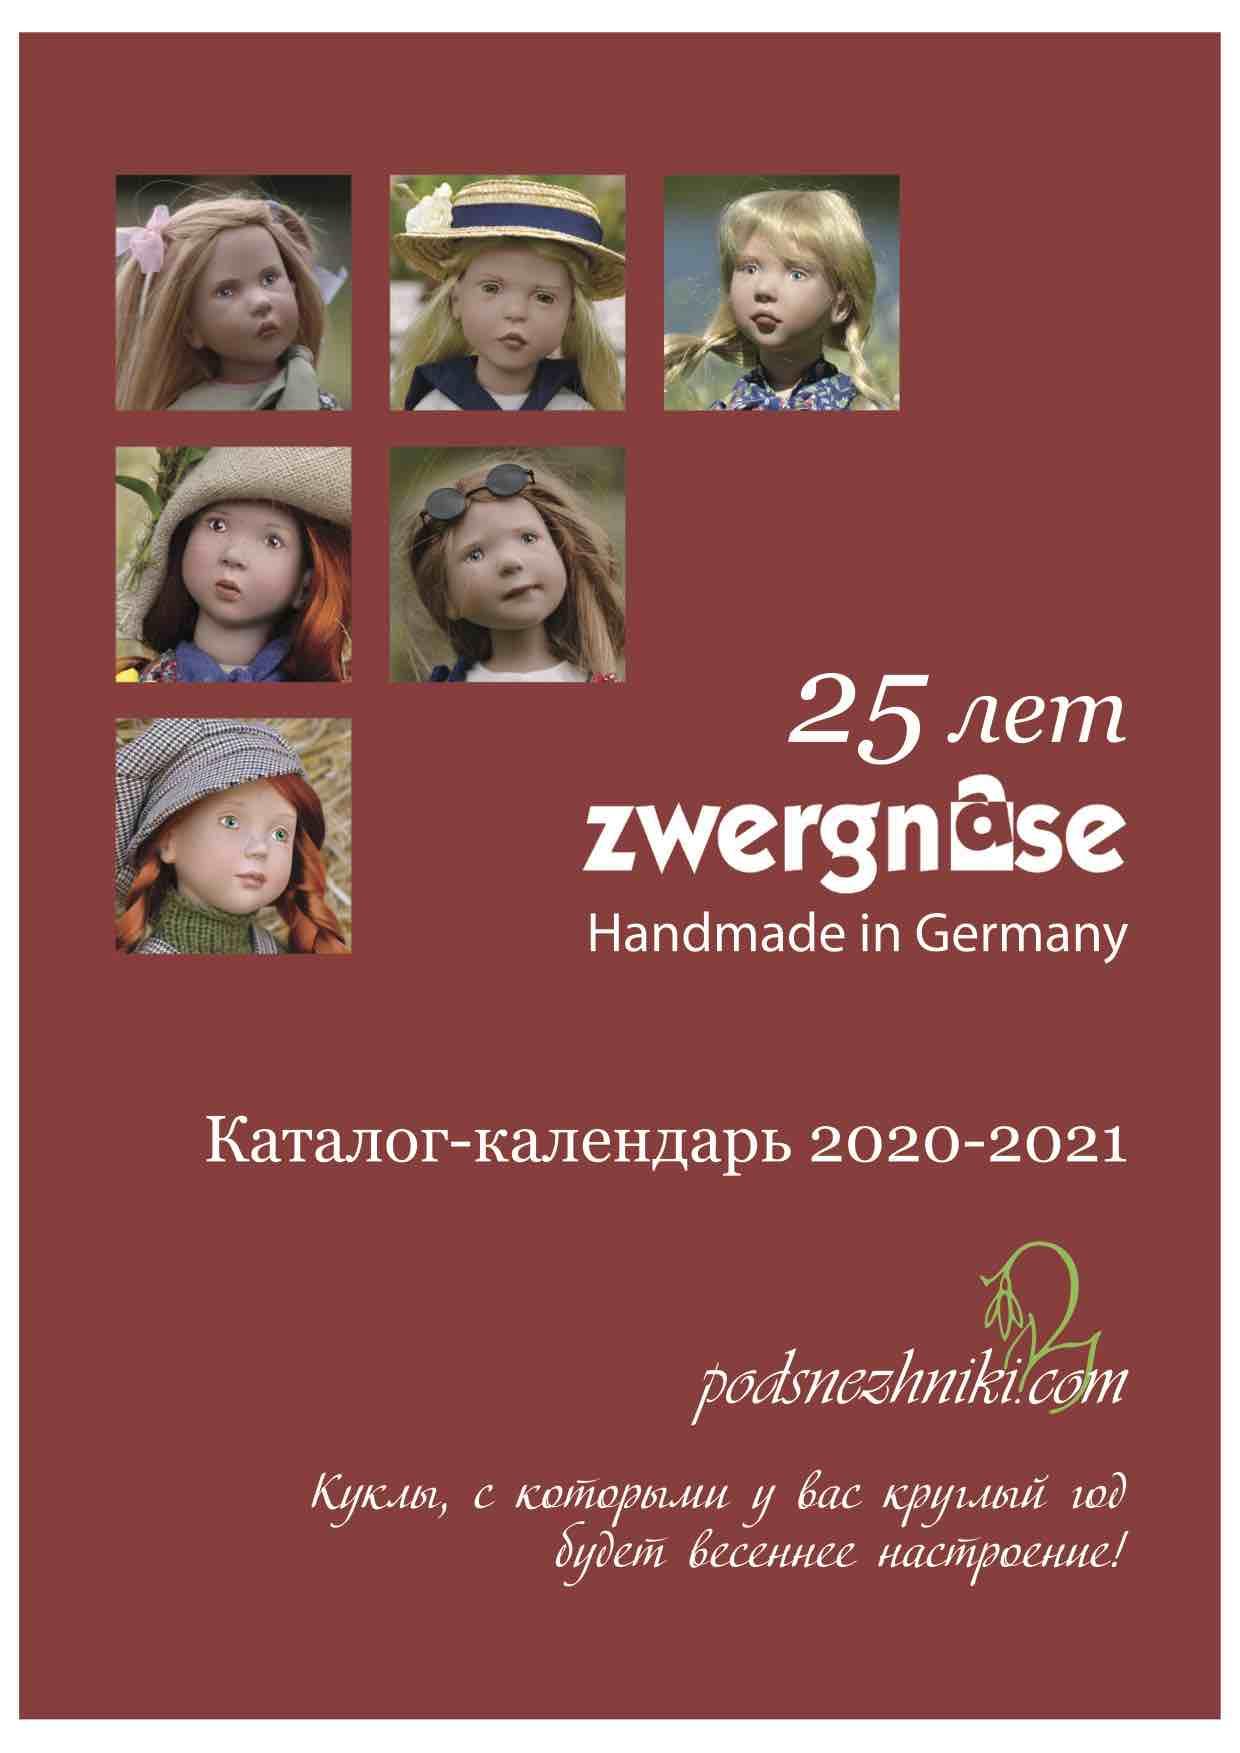 Каталог-Календарь 2020/2021 к 25 юбилею Zwergnase (цена с включенной доставкой)